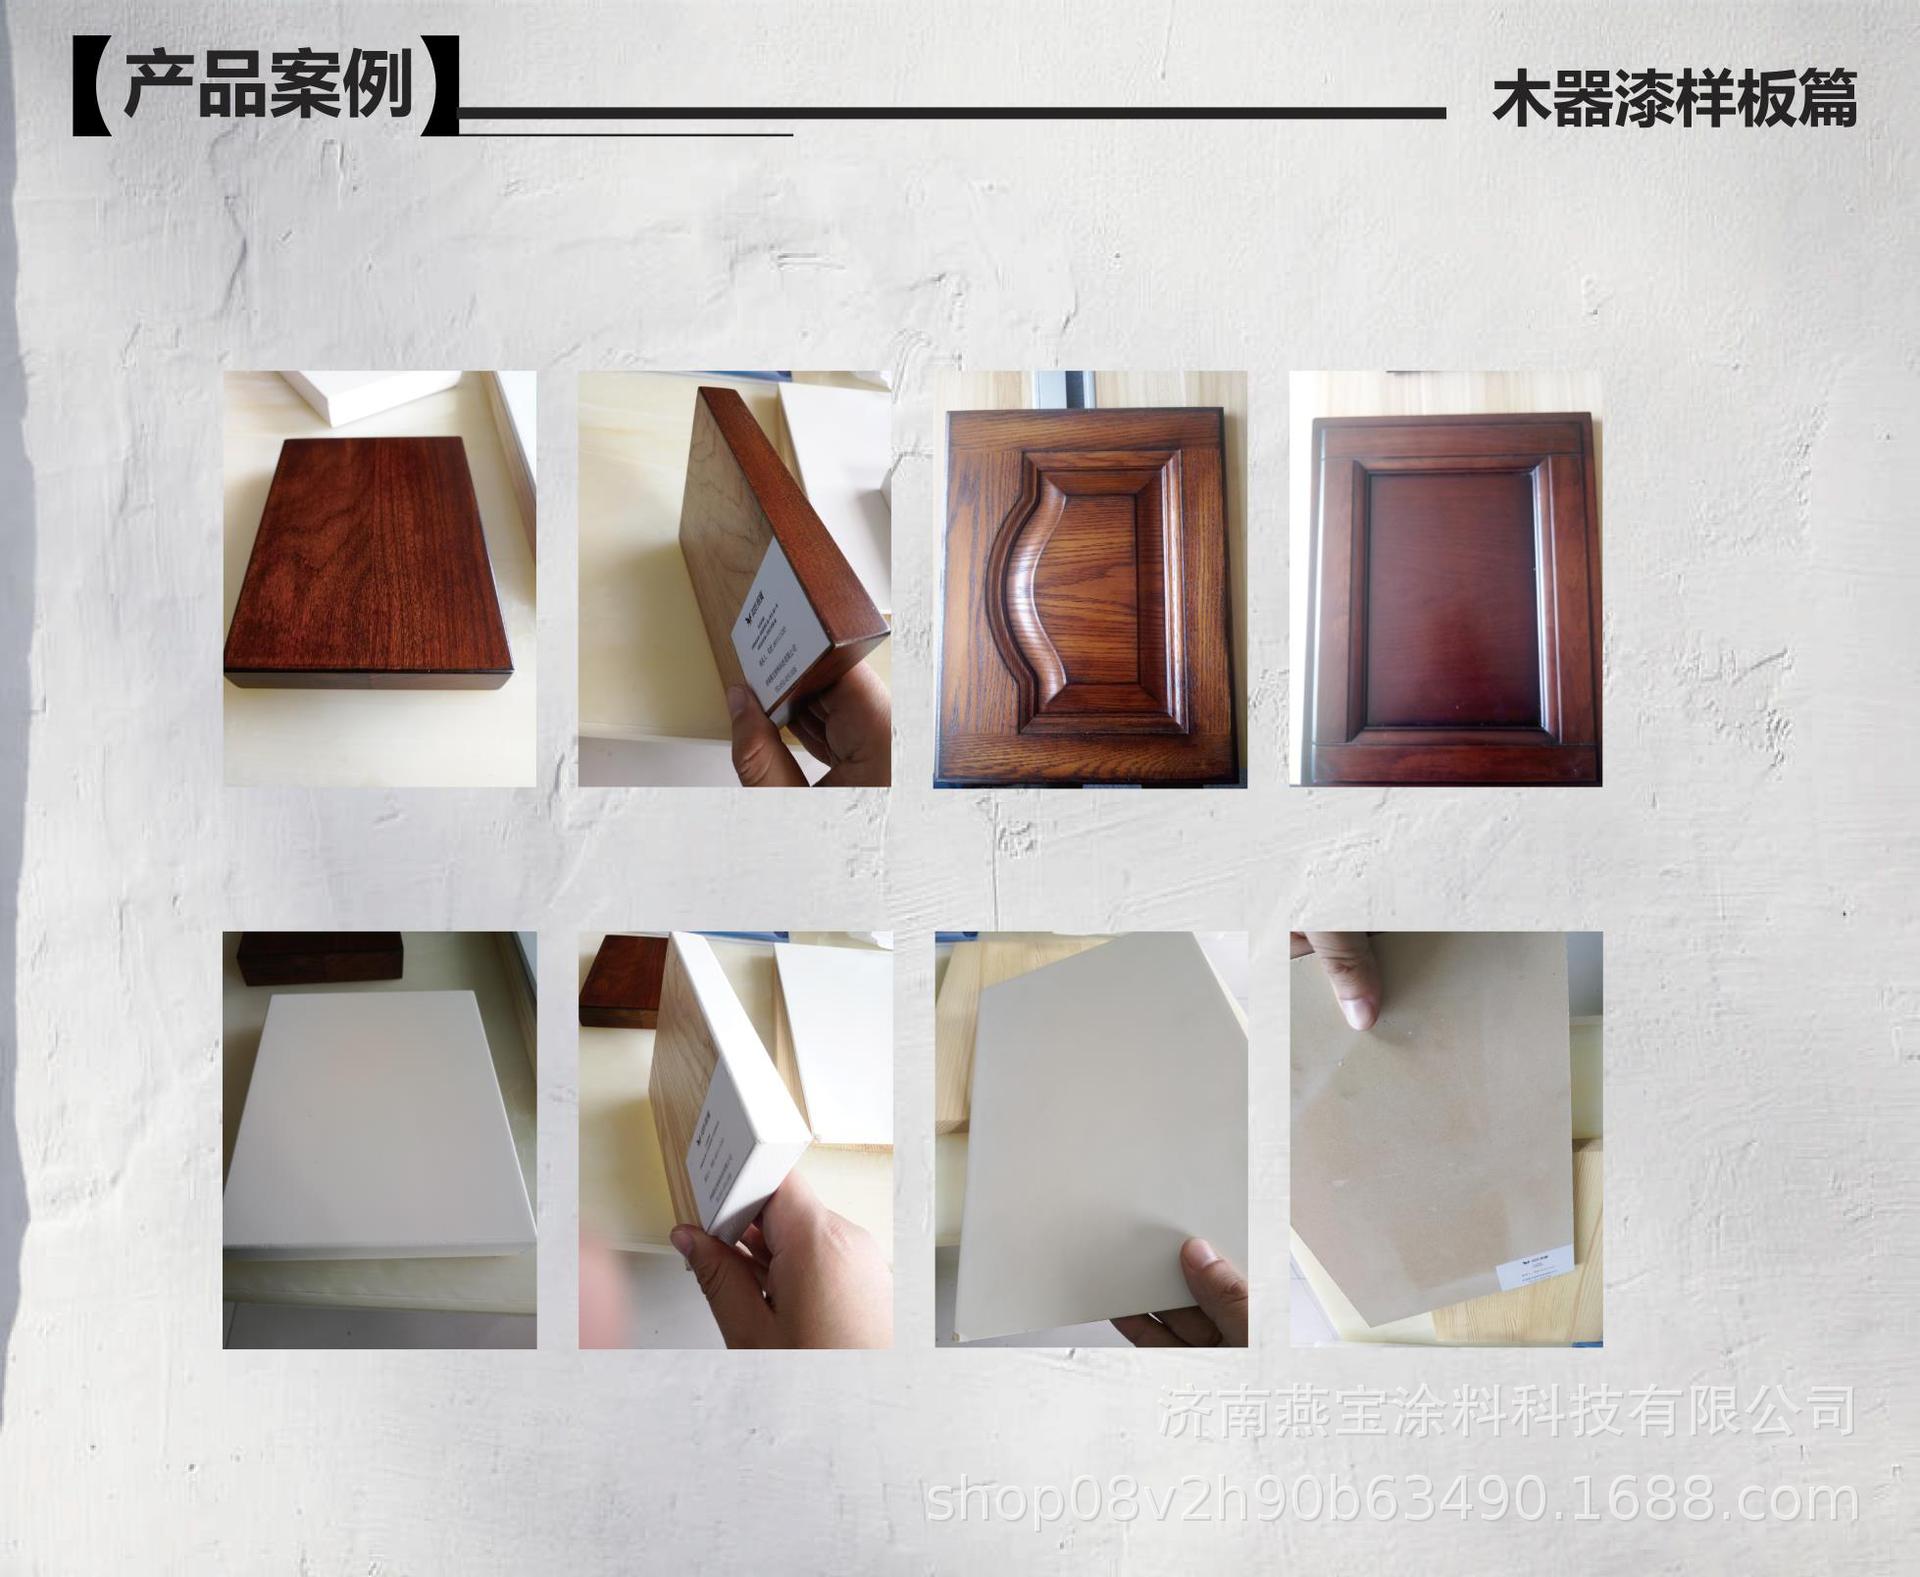 产品案例－木器漆样板篇.jpg